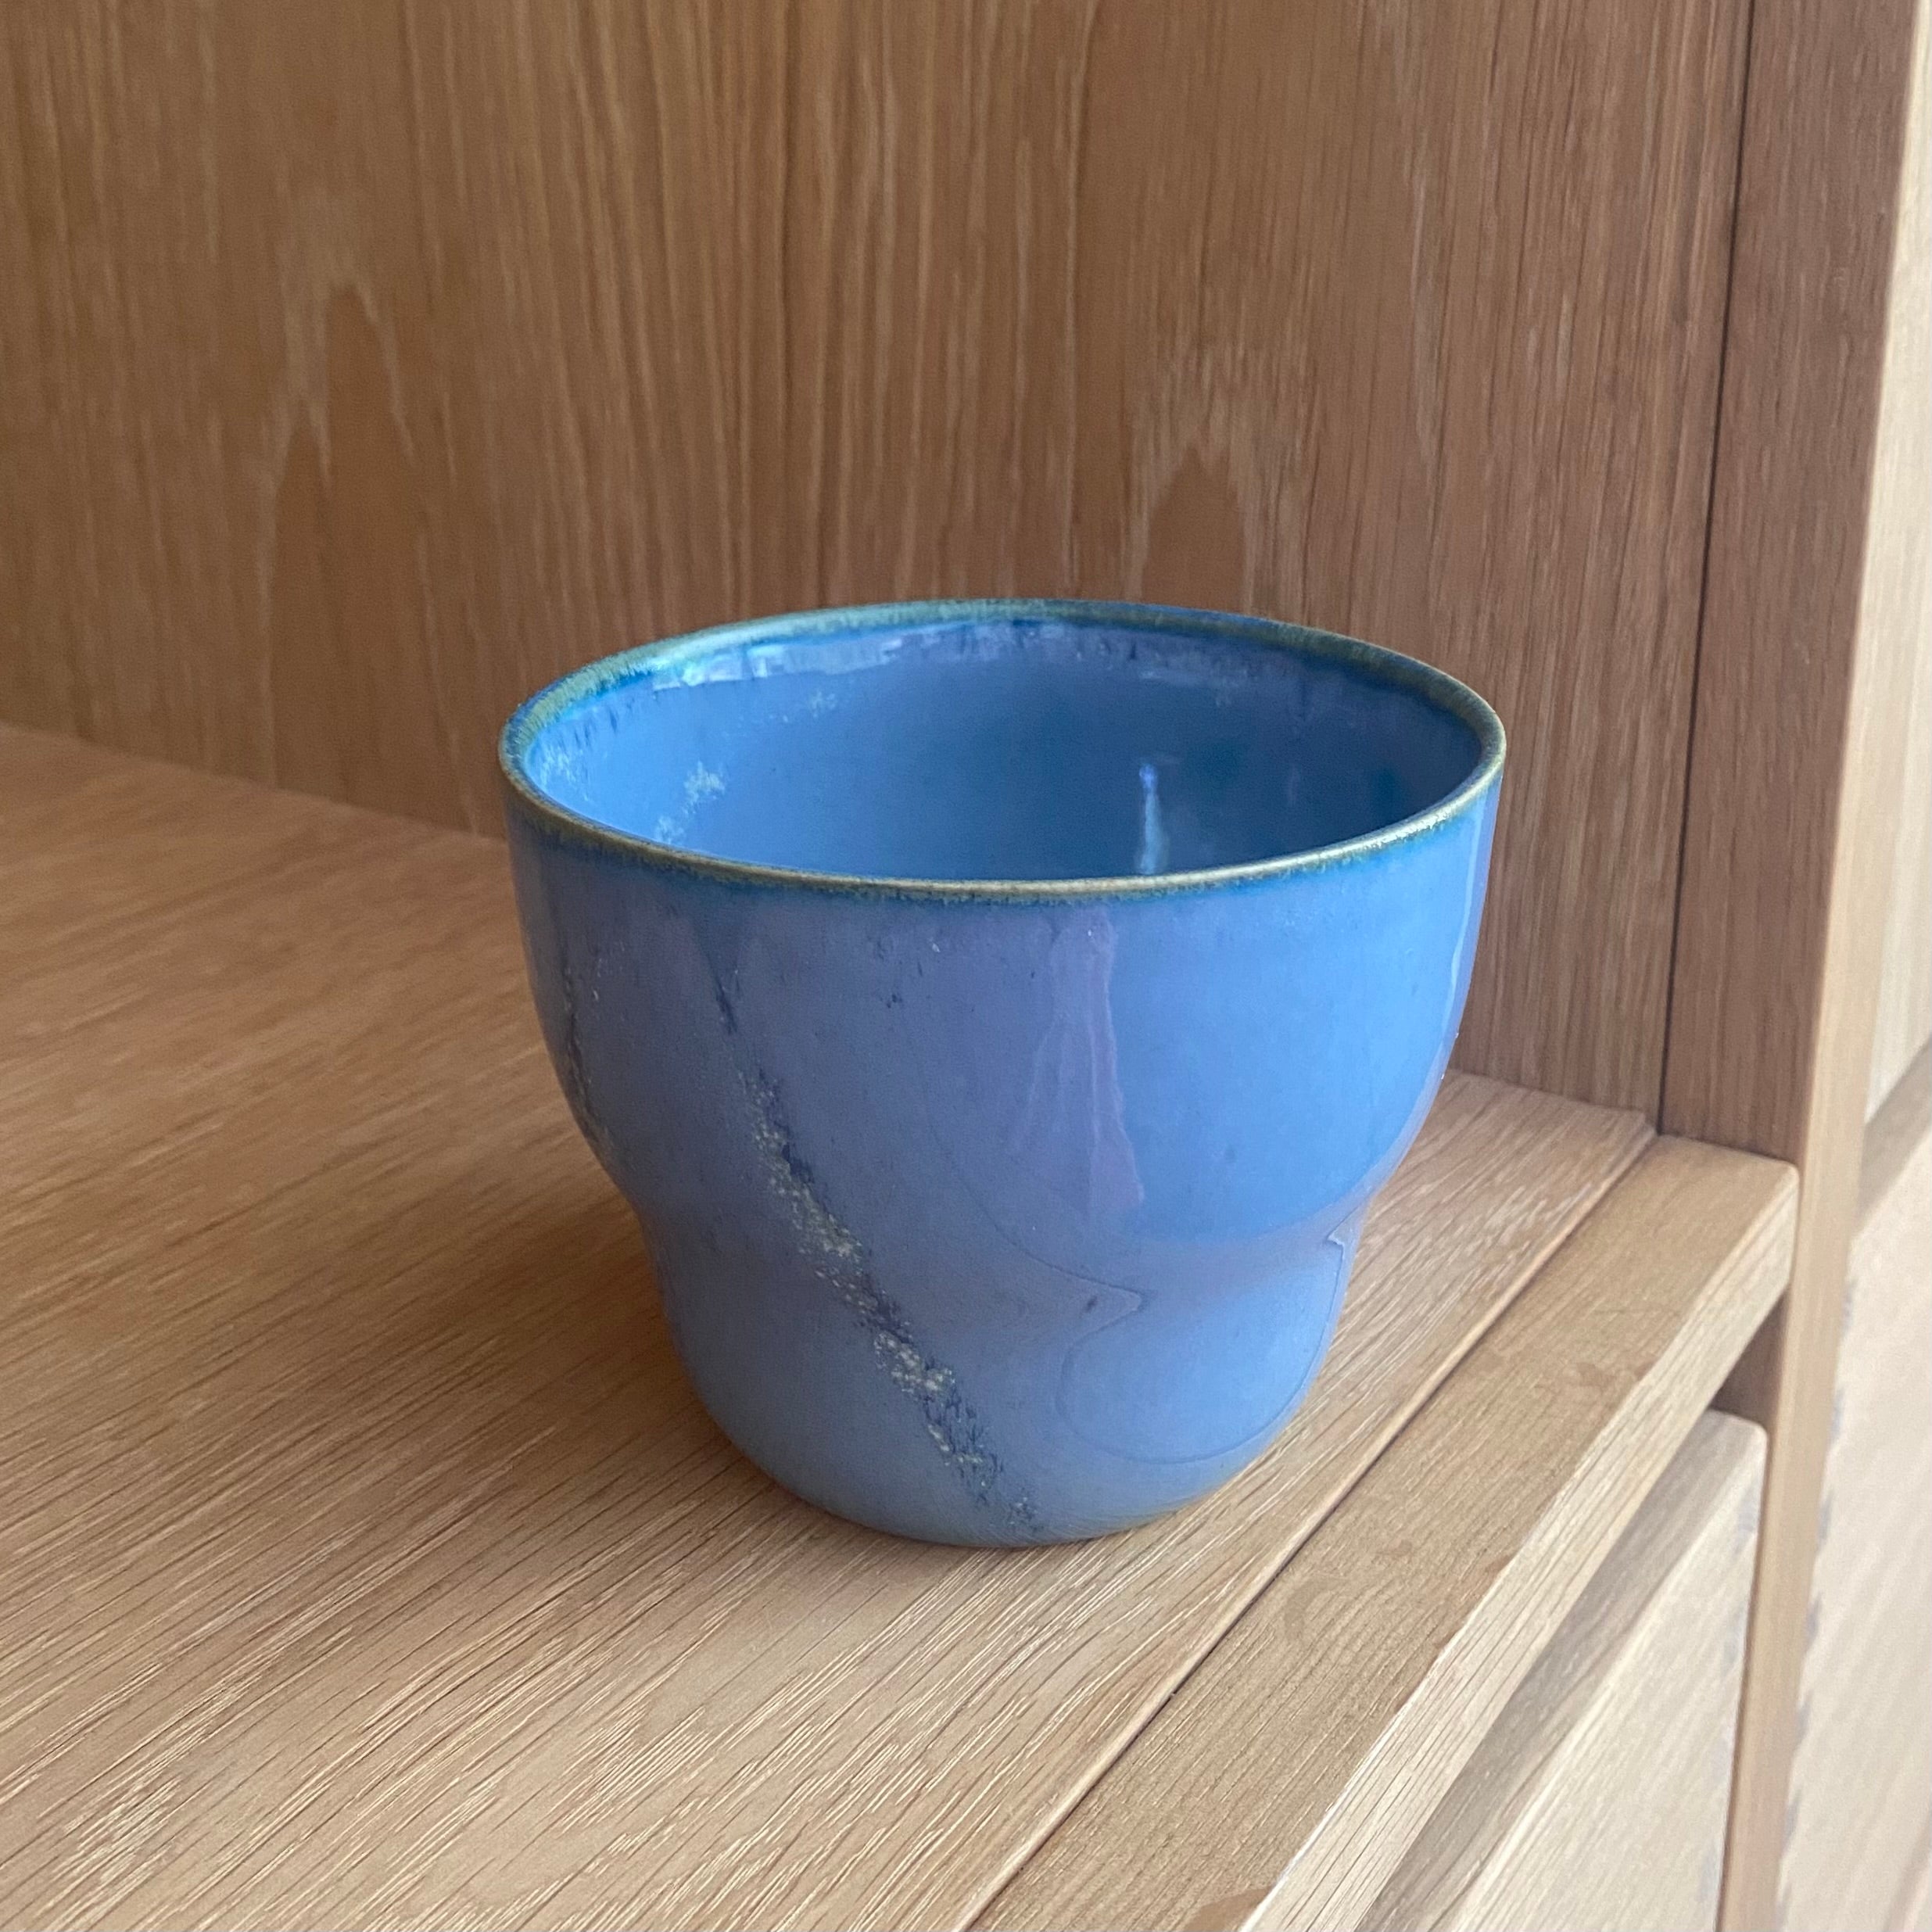 stor kop i designet nexoe haandlavet af keramiker oh oak. farven er smuk blå inspireret af havet rundtom bornholm